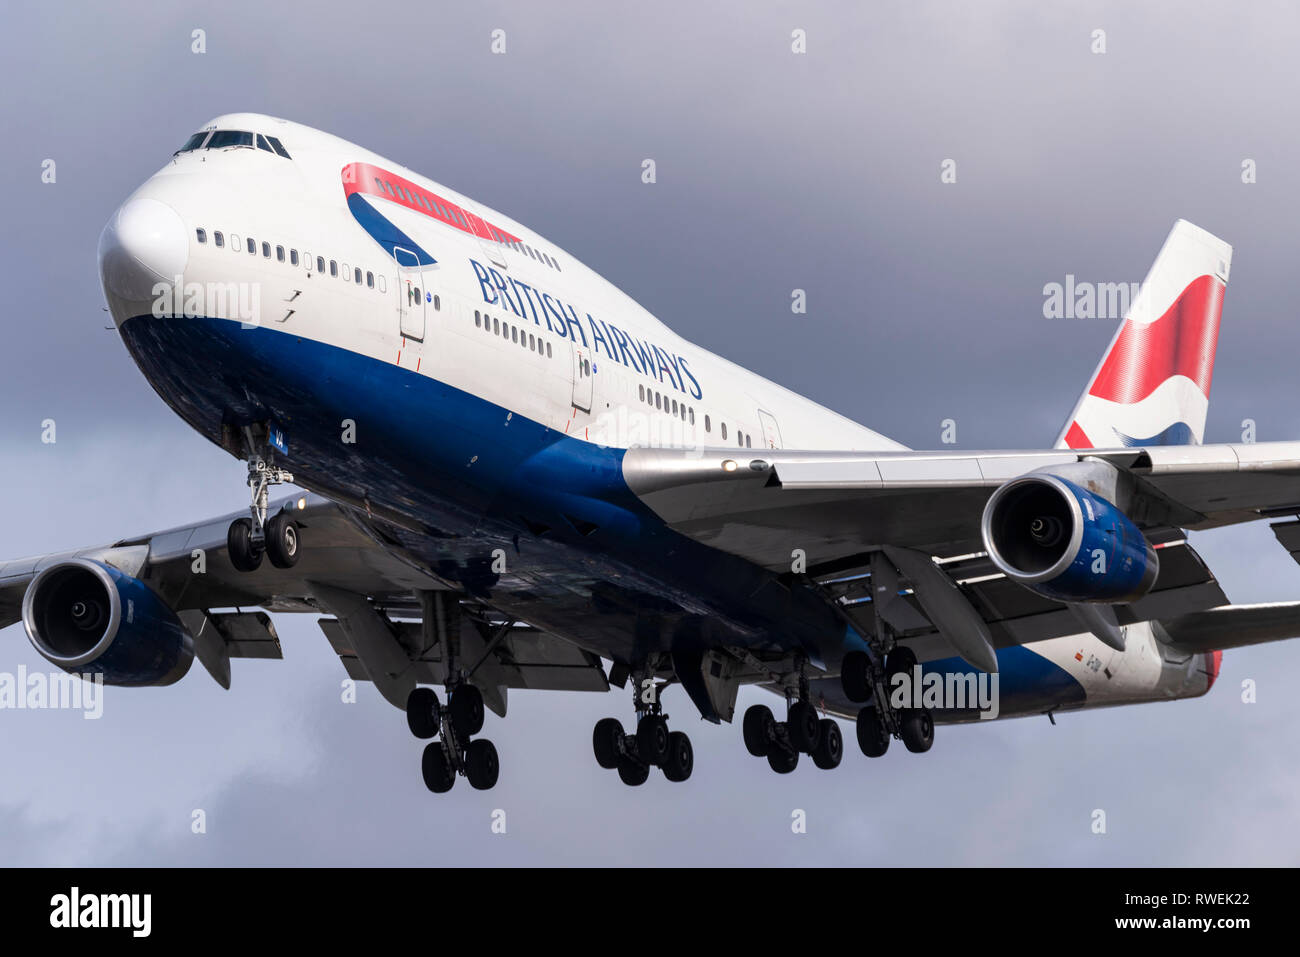 British Airways Boeing 747 Jumbo Jet Jet Flugzeug Flugzeug G-CIVA landet am London Heathrow Airport, Großbritannien Stockfoto